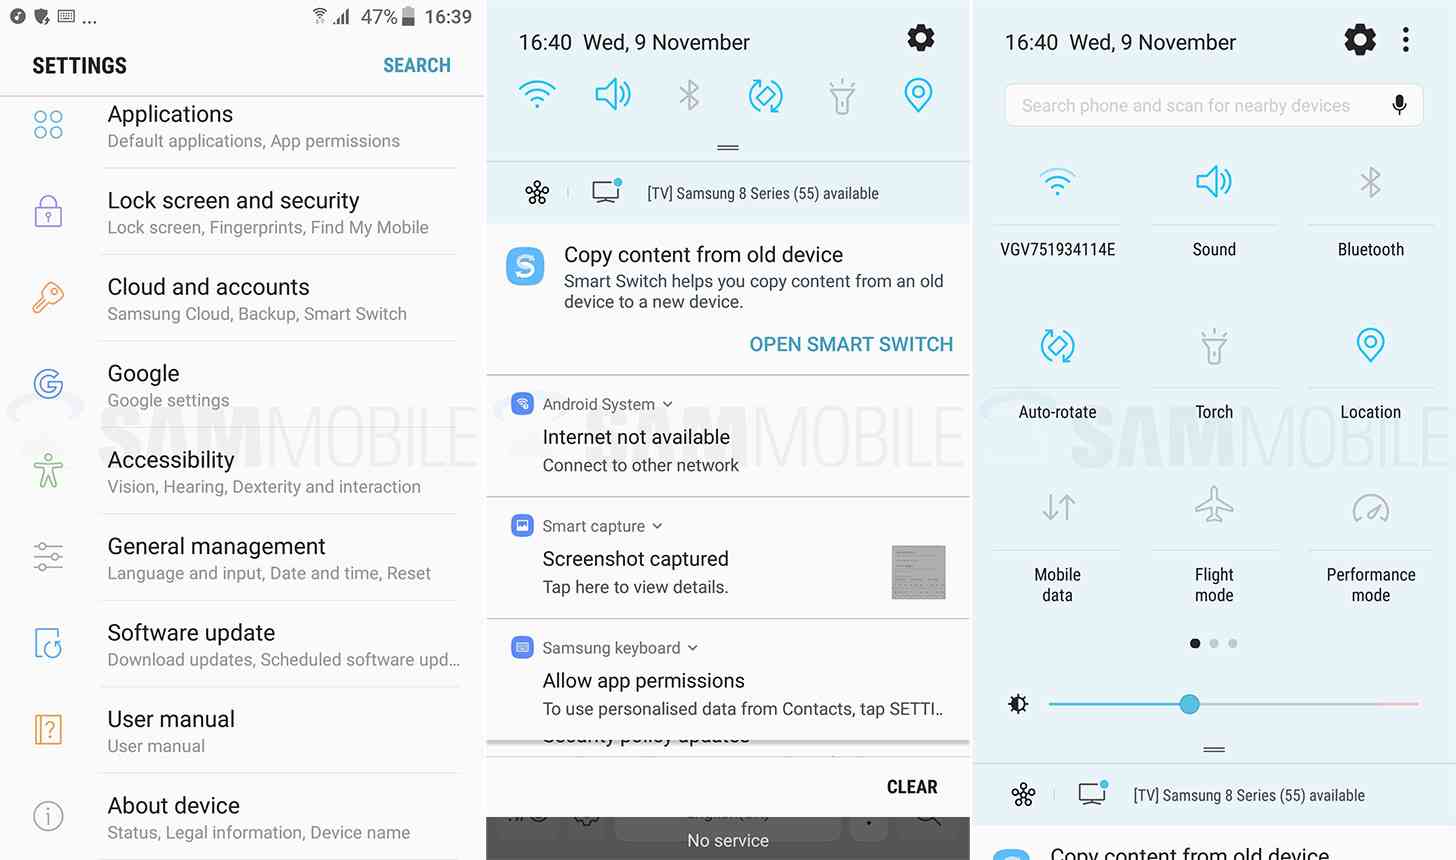 Samsung Galaxy S7 Android 7.0 Nougat Settings, Notifications screenshots